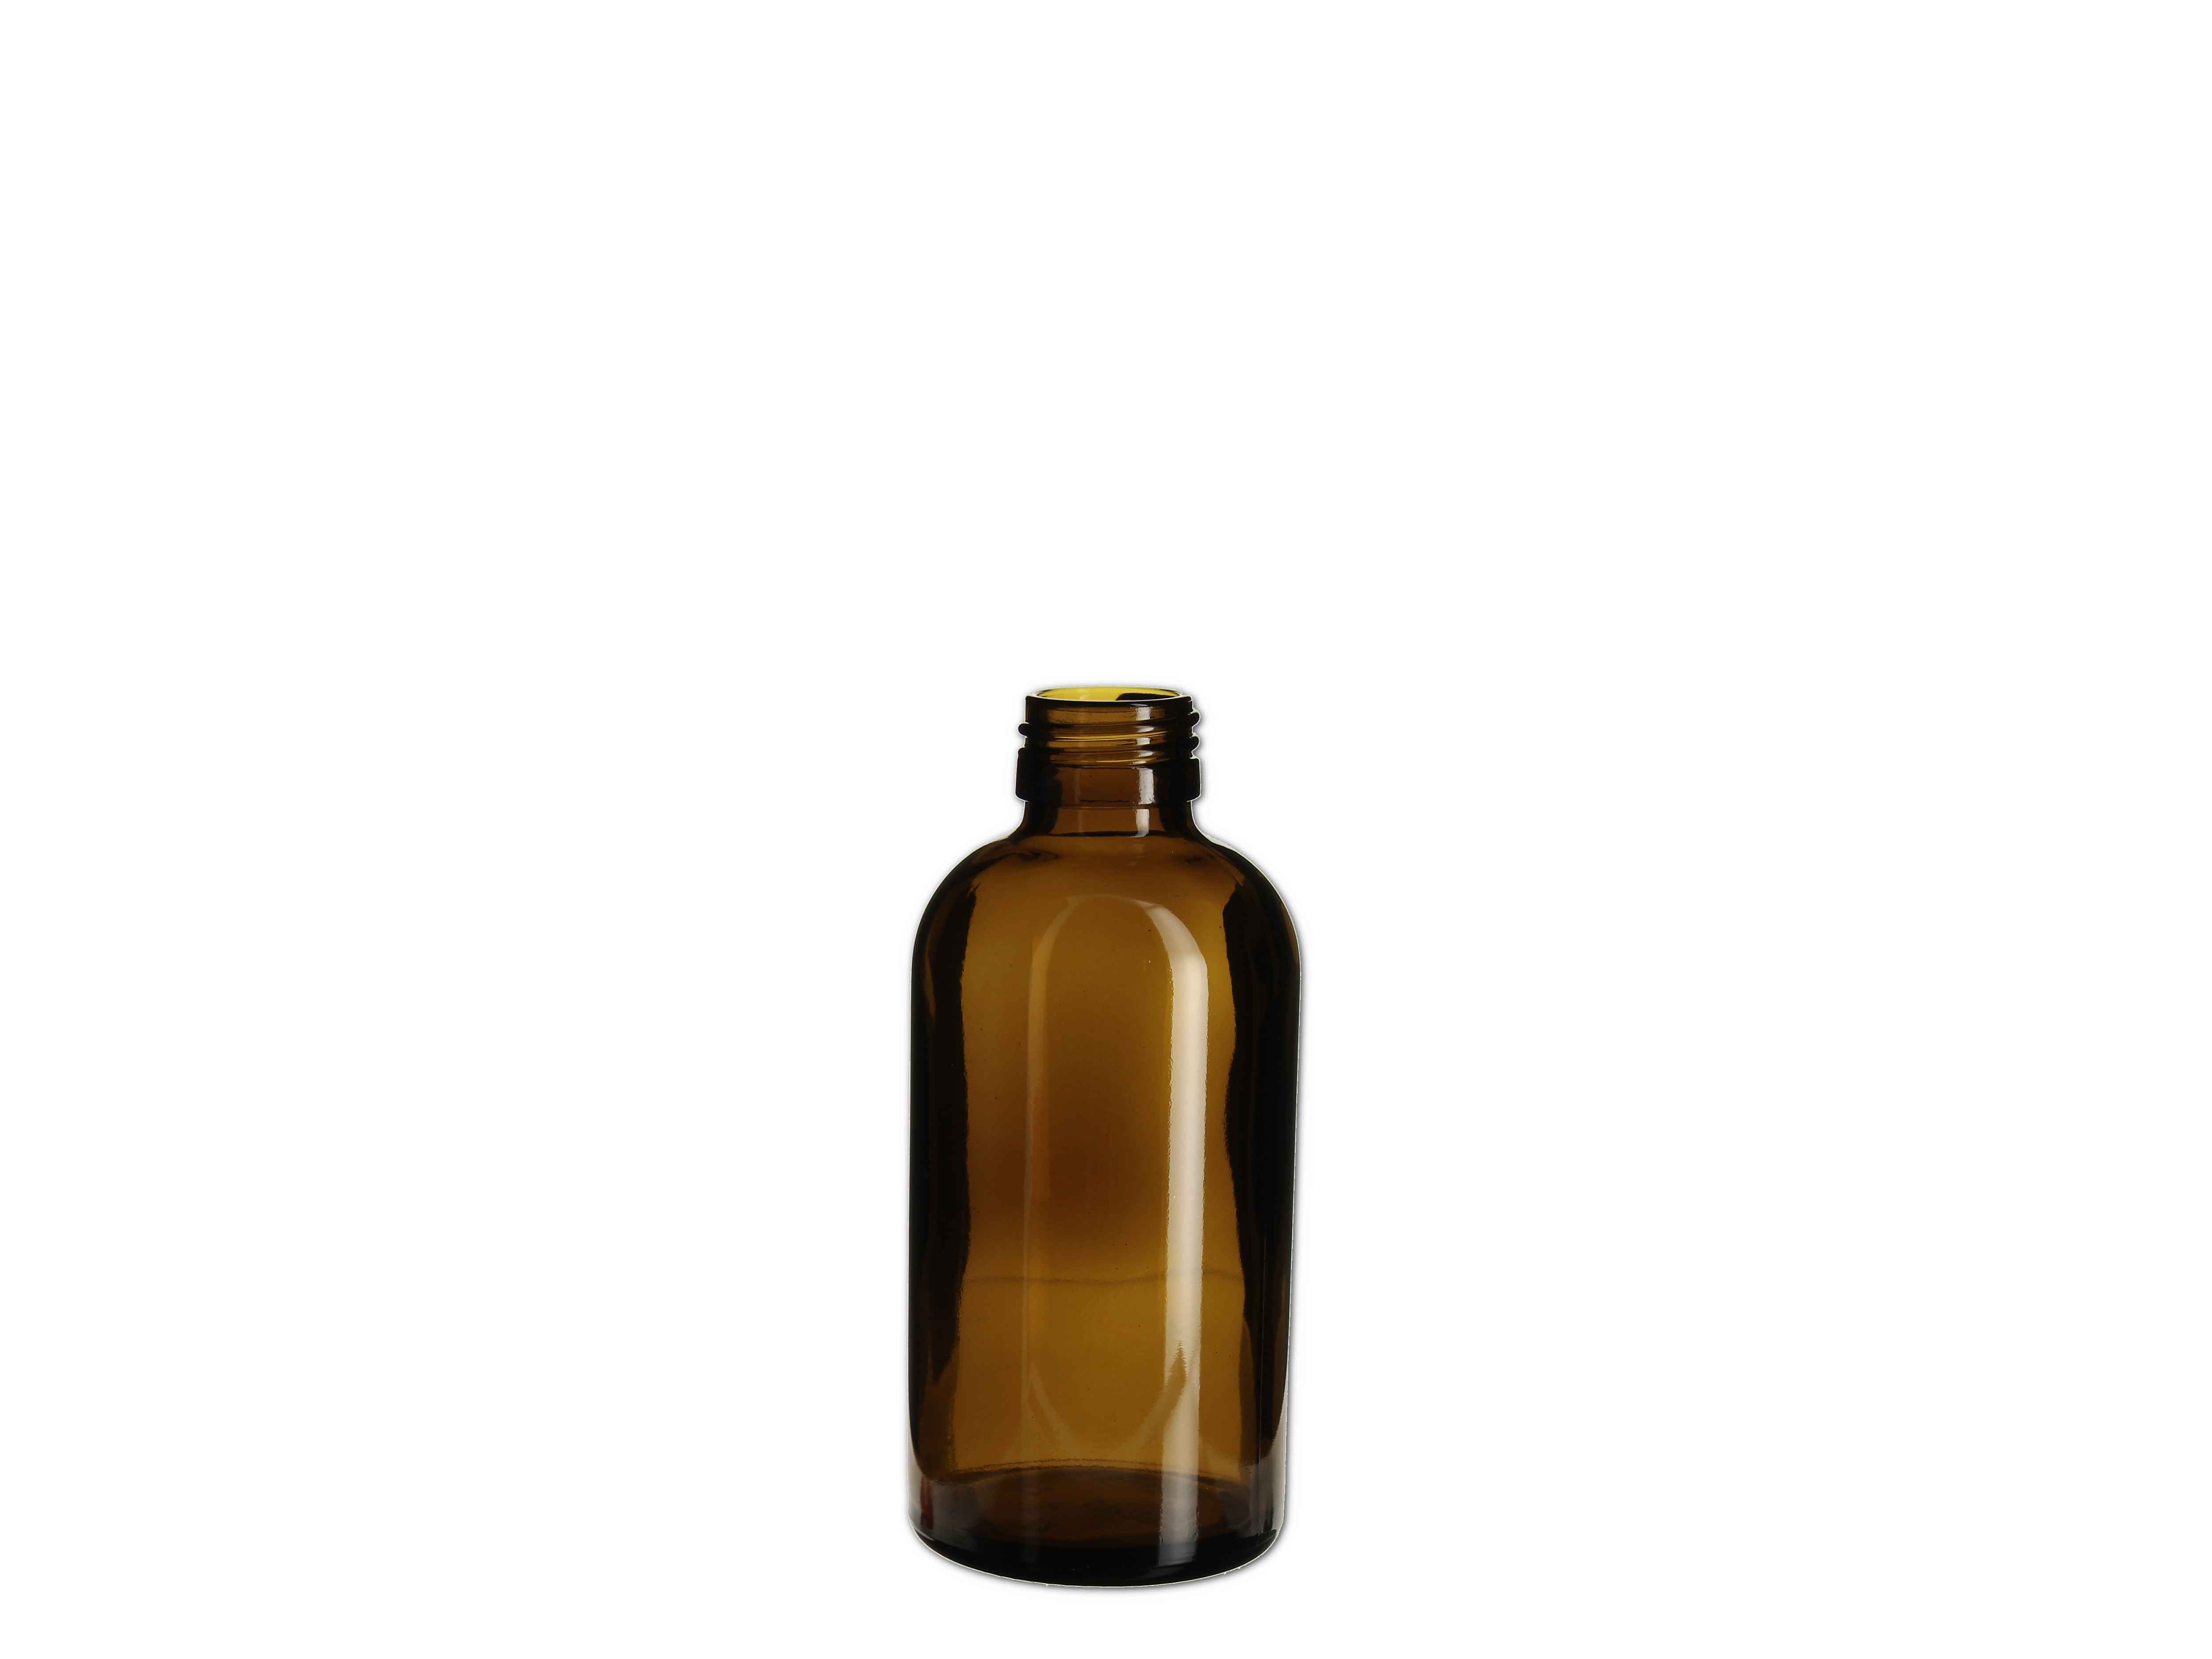    Medizin Flasche braun - PP28 - 200ml